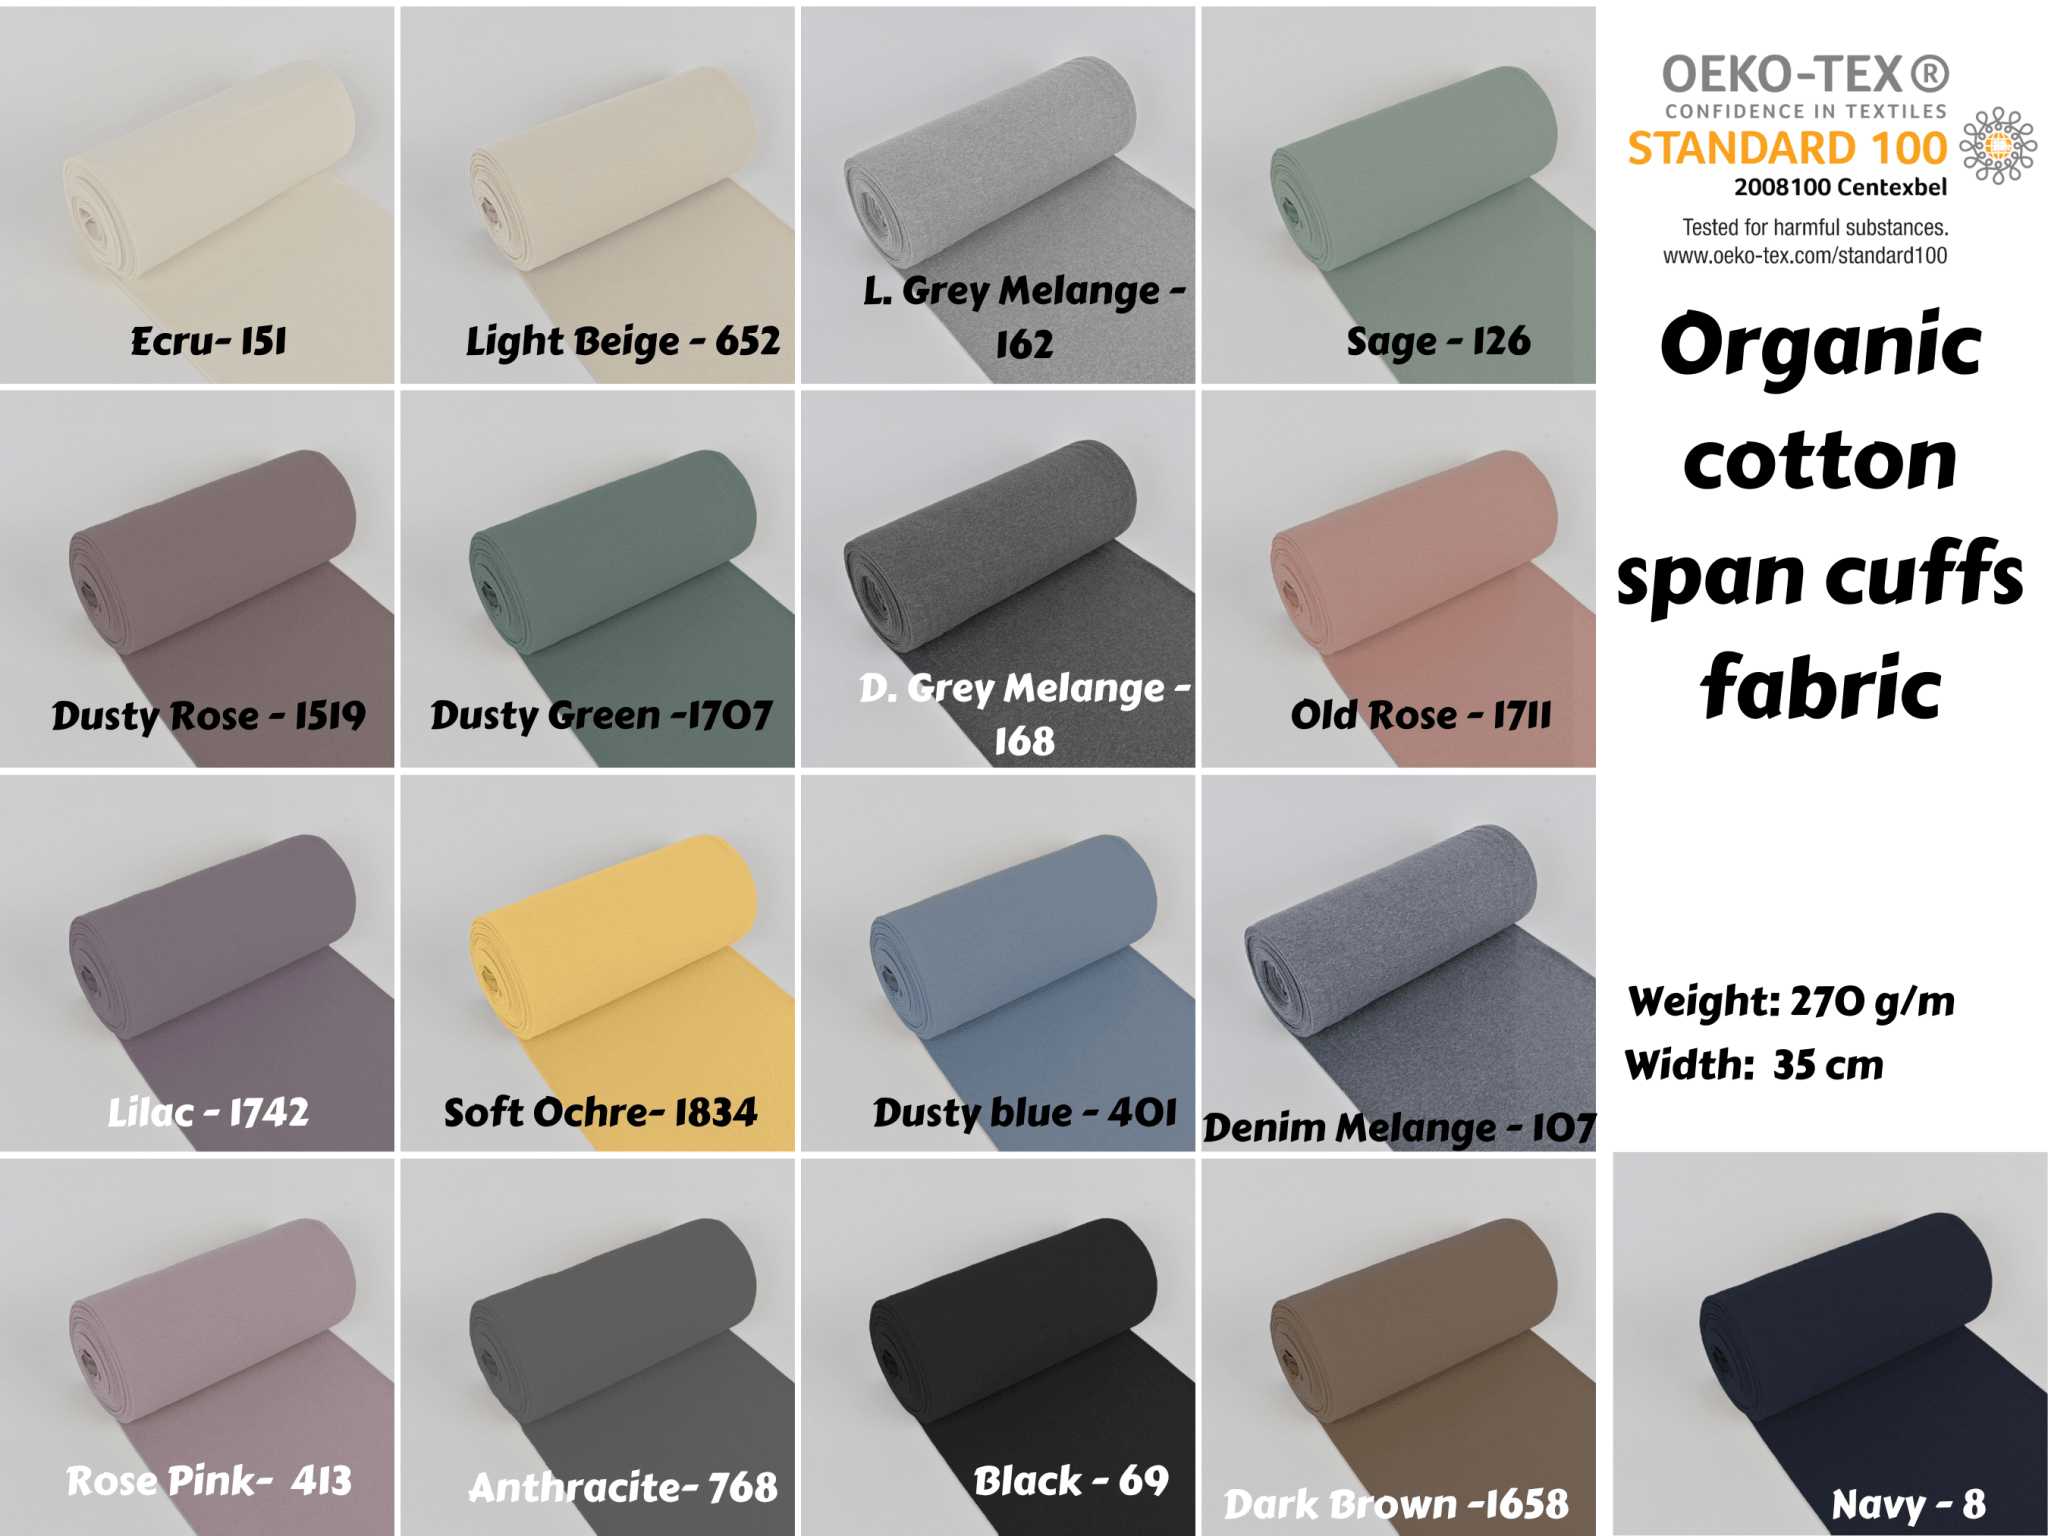 95% Organic Cotton, 5% Elastane Single Jersey - Grey Melange